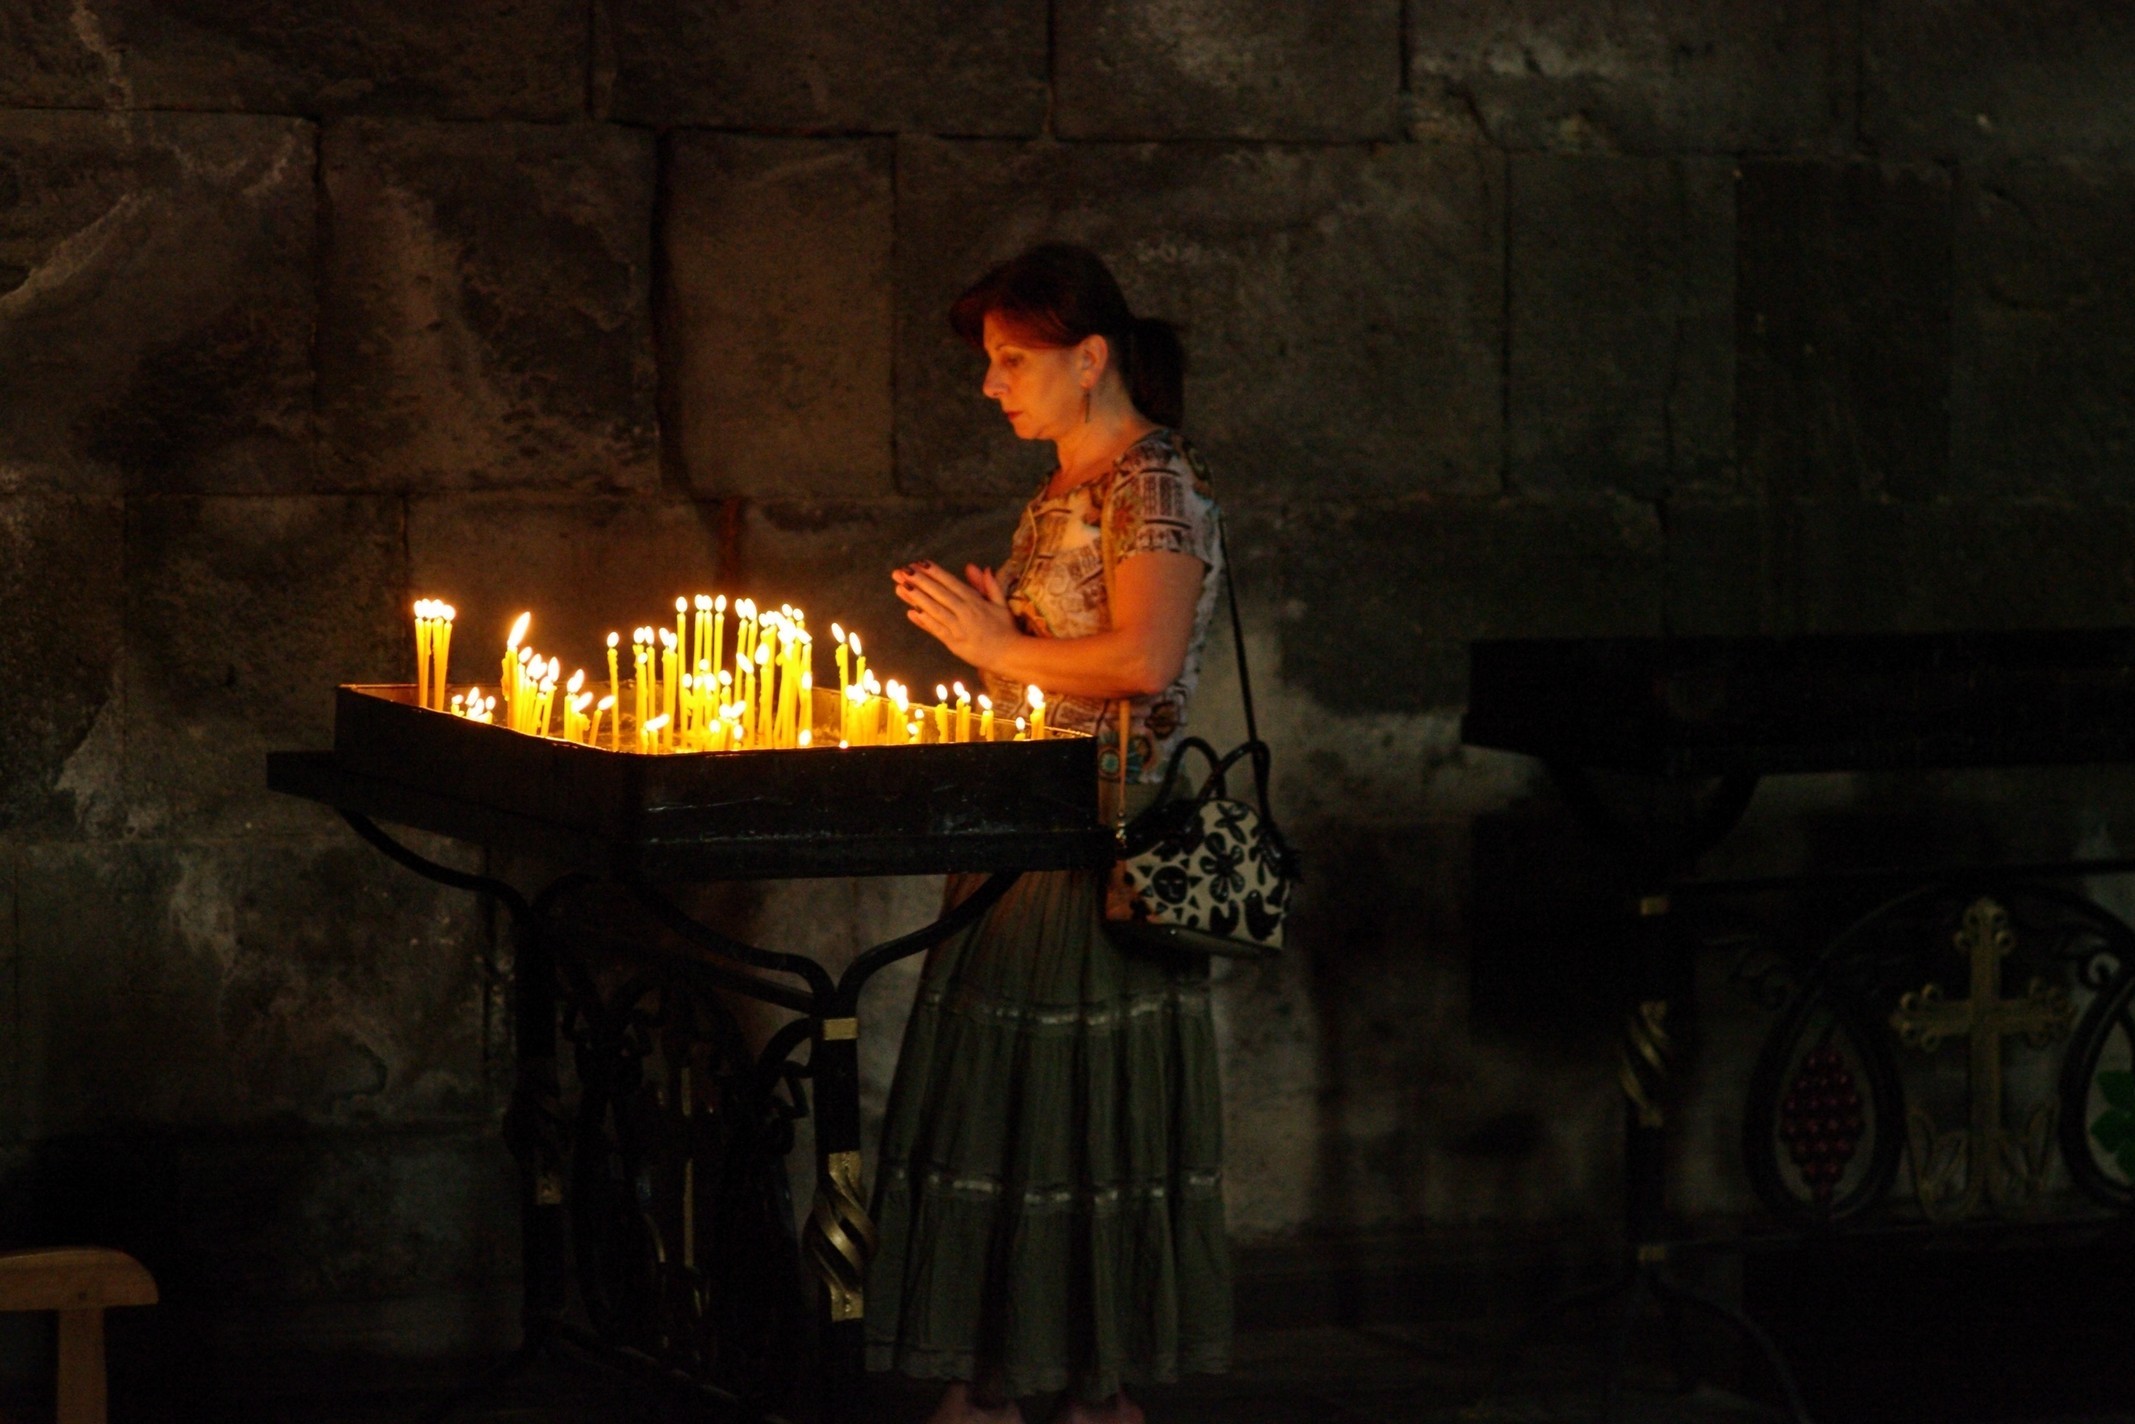 Песни за семью свечу зажгу. Свечи в храме. Свечка в армянской церкви. Армения девушка храм. Тихие свечи.